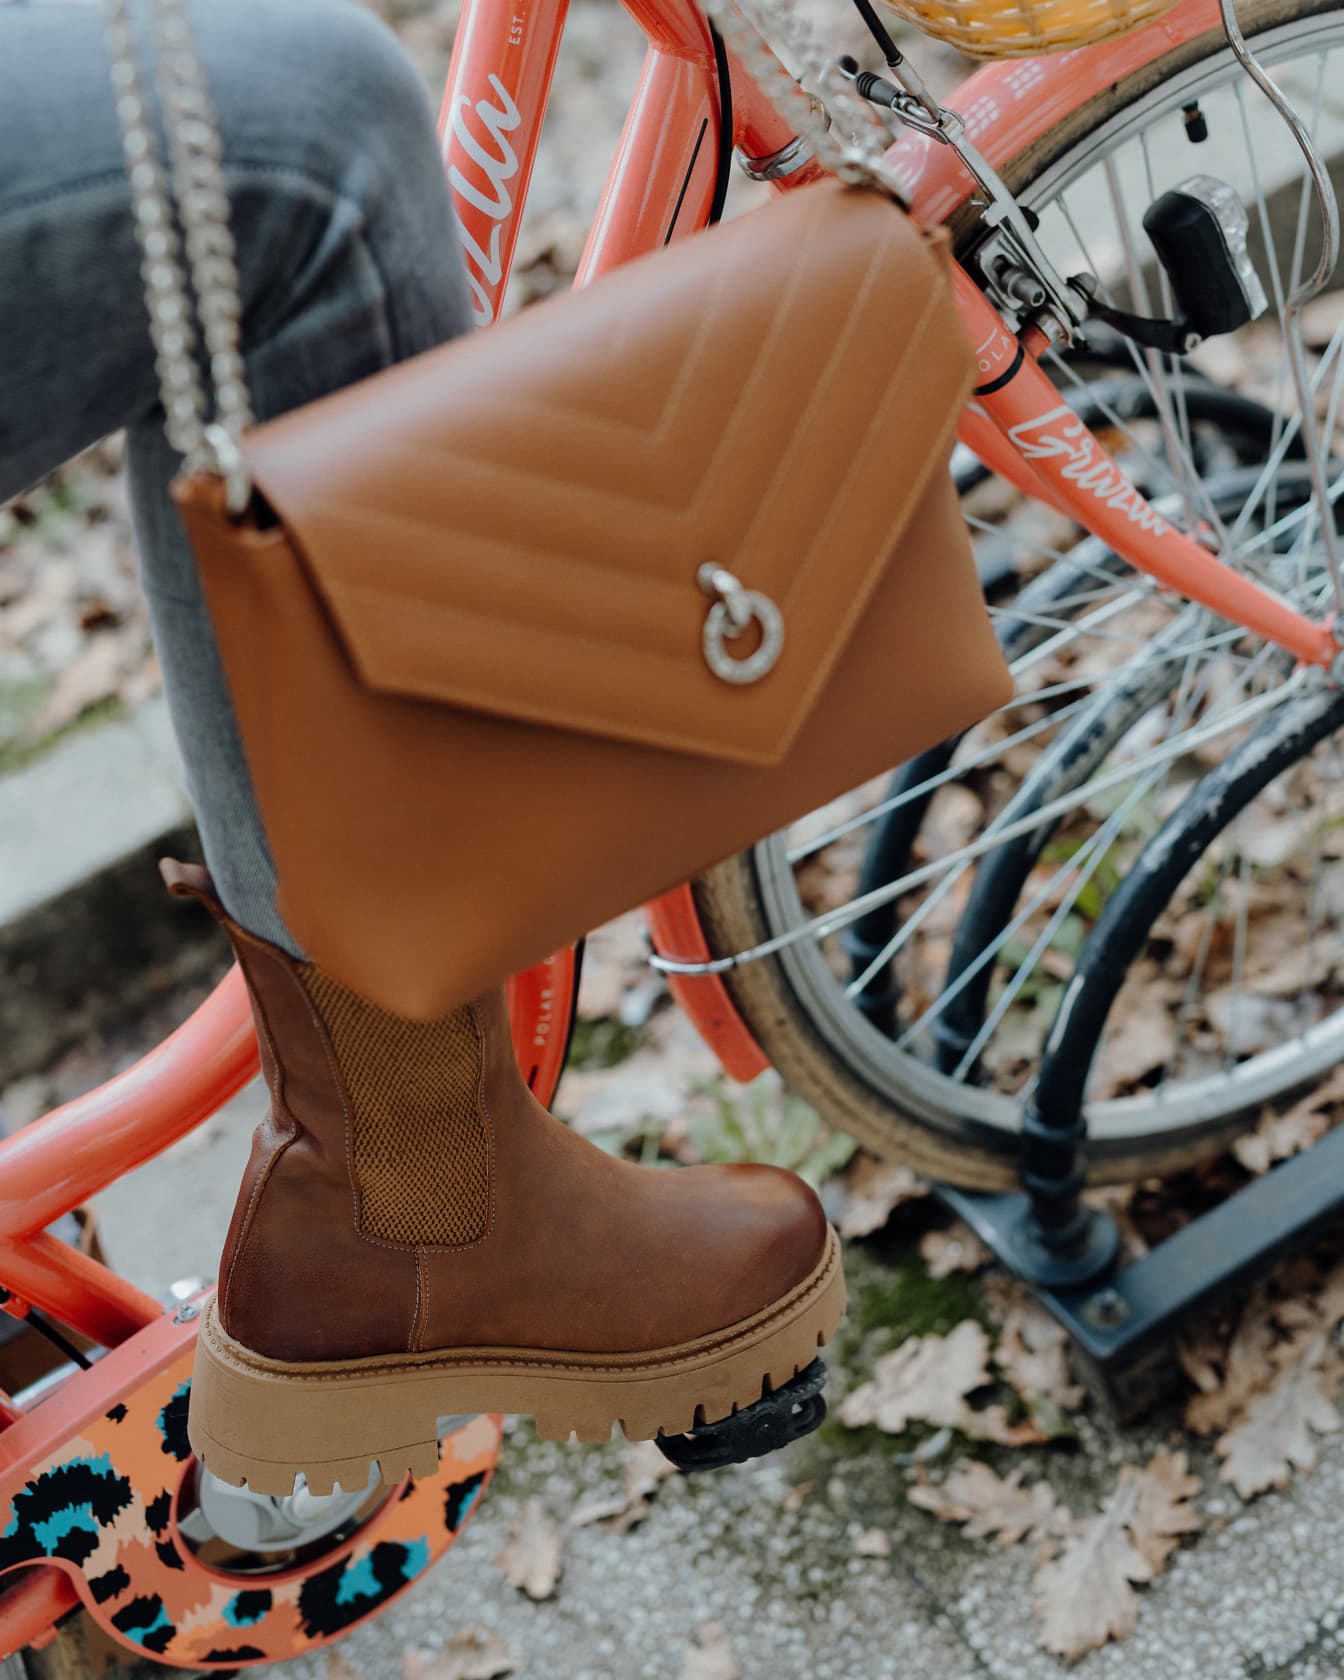 Personne portant une botte en cuir marron à la mode et un sac à main brun sur un vélo rouge